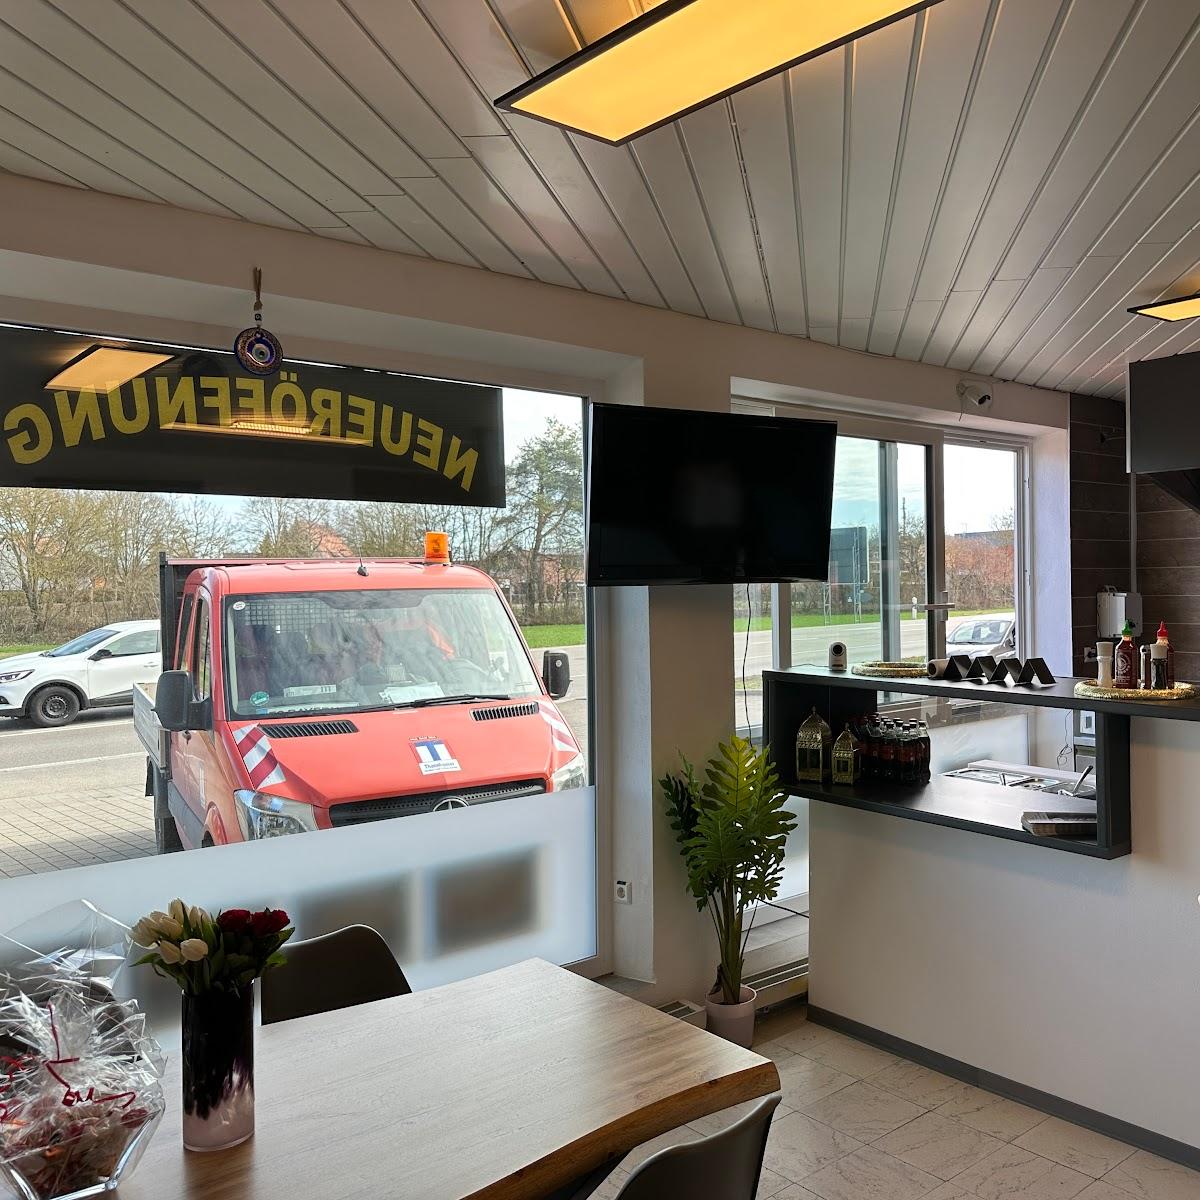 Restaurant "Nero Kebap & Pizzahaus" in Wilburgstetten